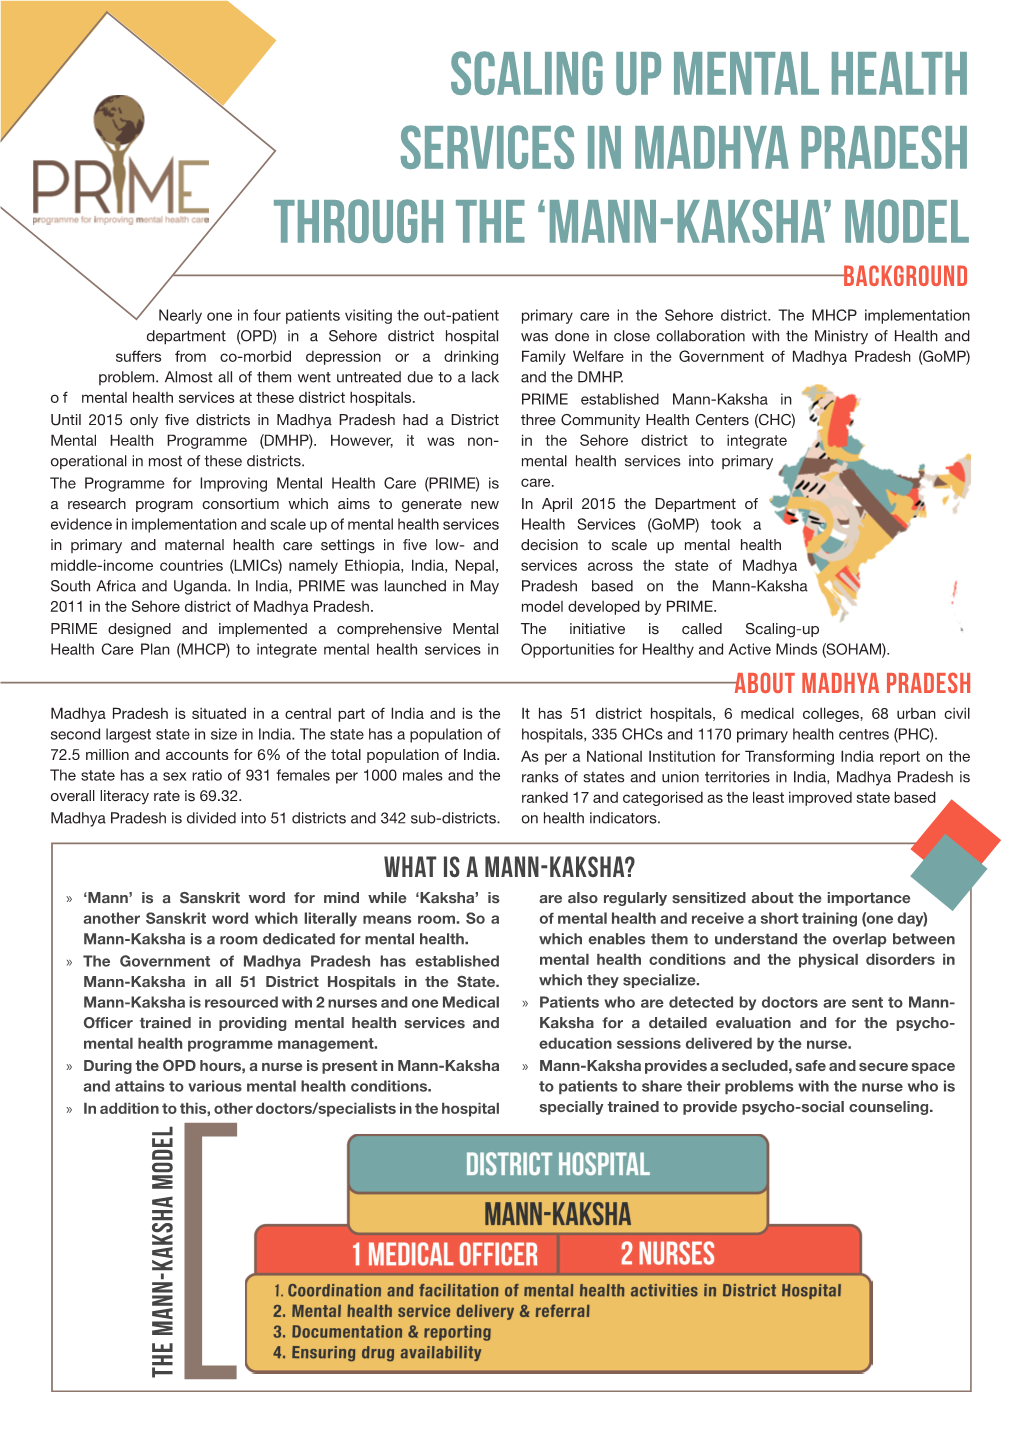 Mann-Kaksha’ Model BACKGROUND